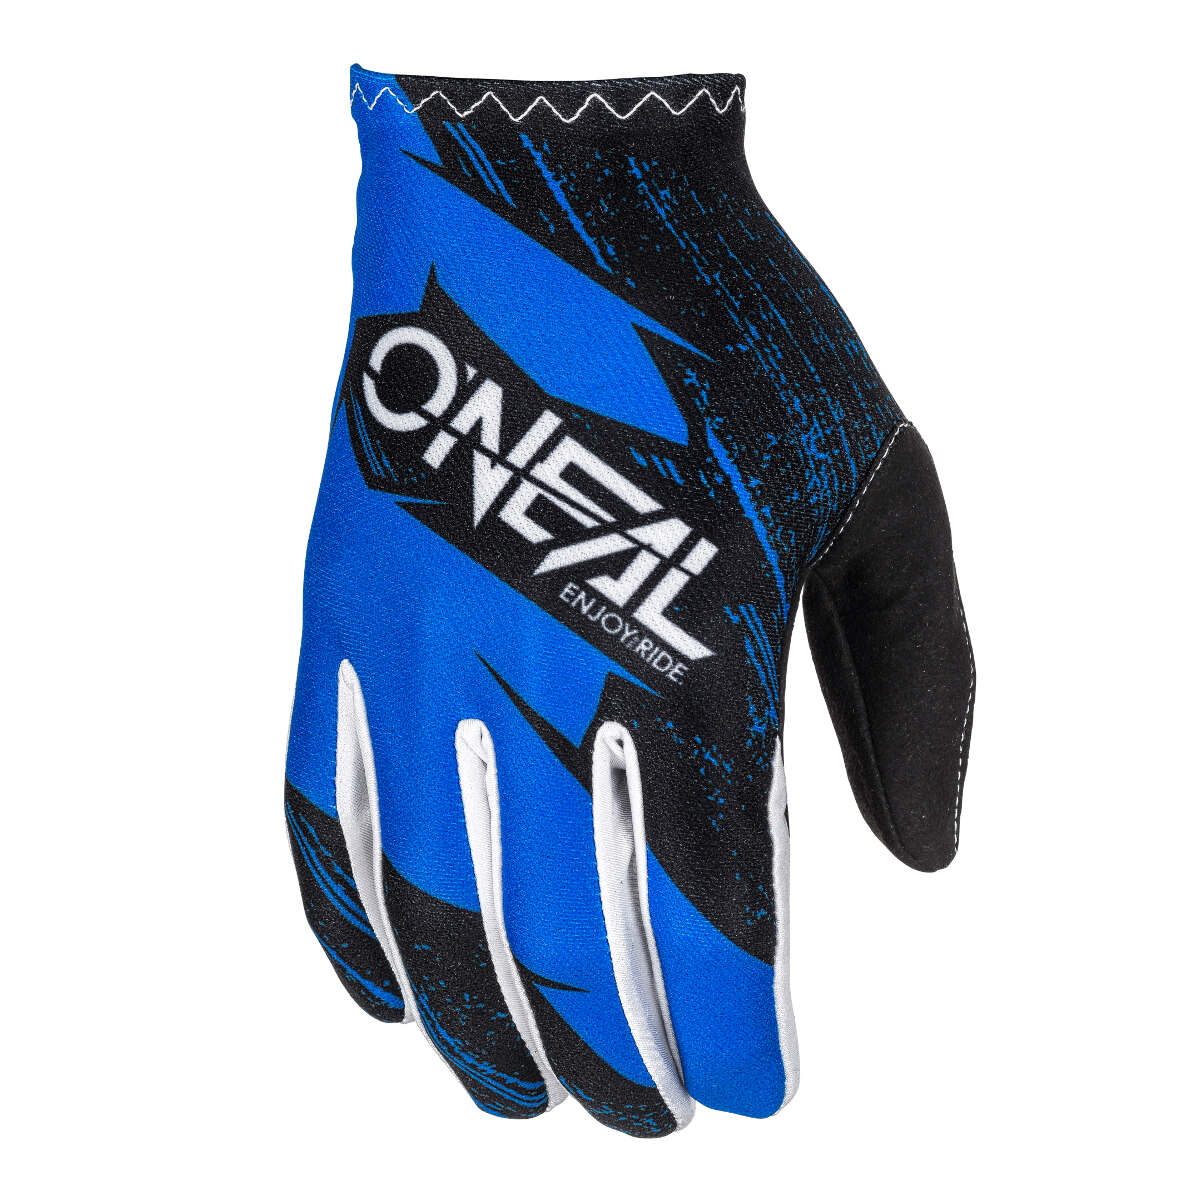 O'Neal Handschuhe Matrix Burnout Blau/Schwarz